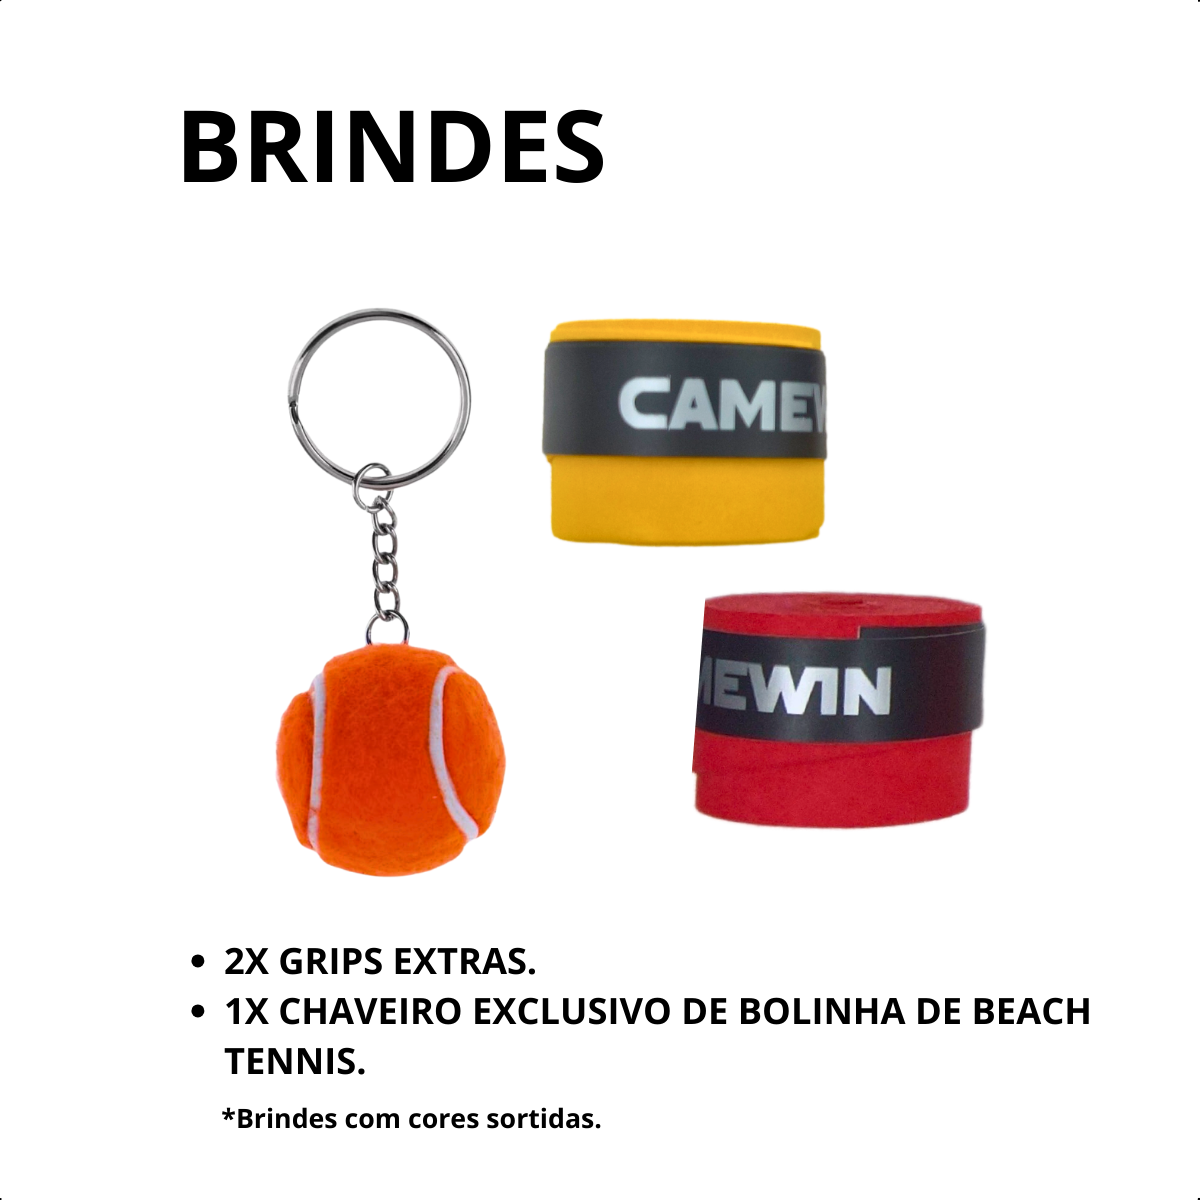 Raquete Beach Tennis para Iniciantes Camewin + Brindes Exclu - 4